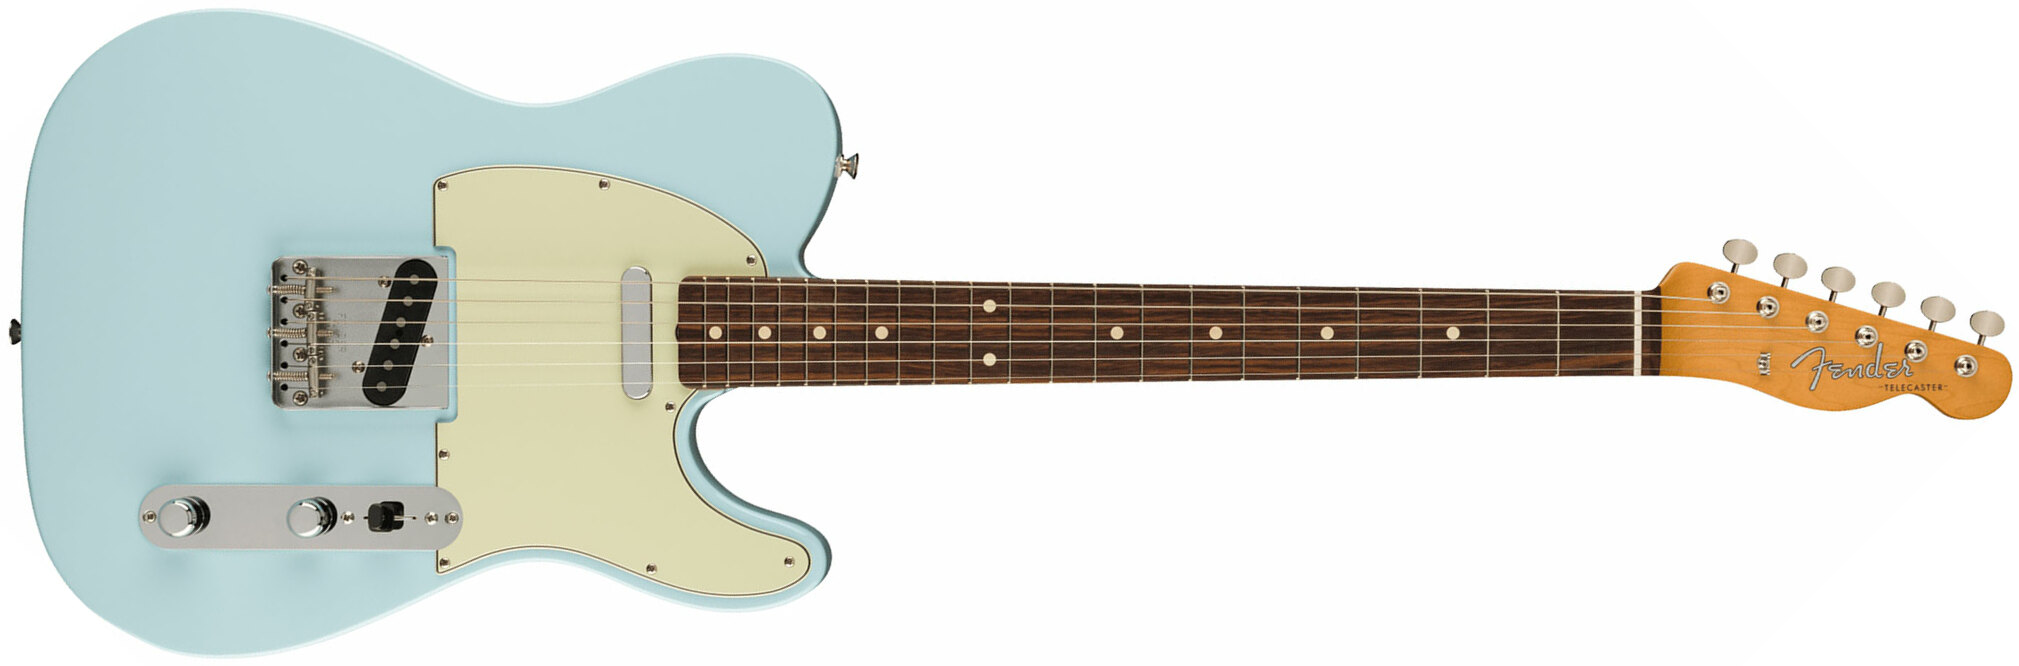 Fender Tele 60s Vintera 2 Mex 2s Ht Rw - Sonic Blue - E-Gitarre in Teleform - Main picture